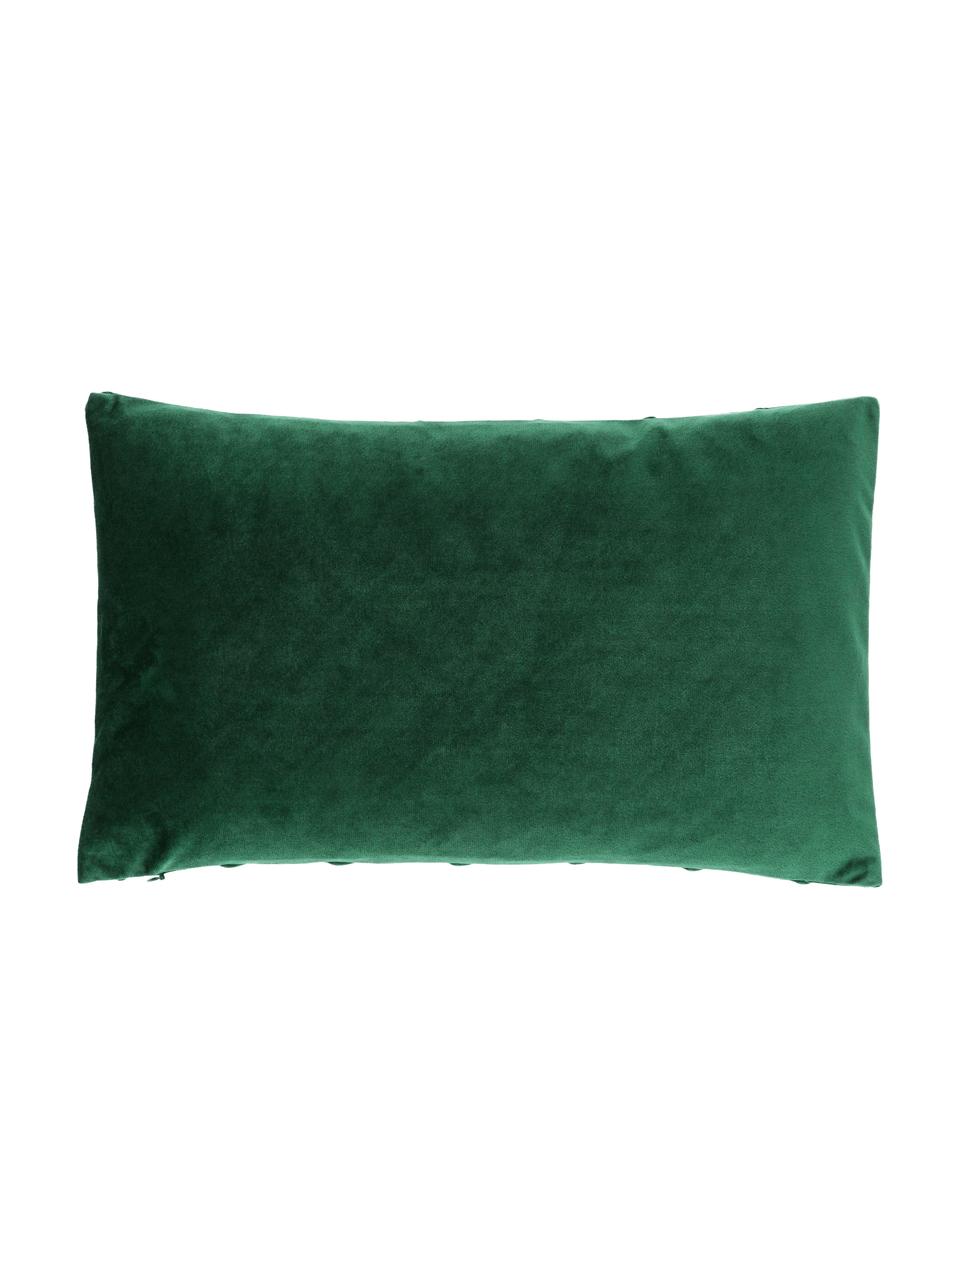 Federa arredo in velluto verde scuro con motivo strutturato Leyla, Velluto (100% poliestere), Verde, Larg. 30 x Lung. 50 cm